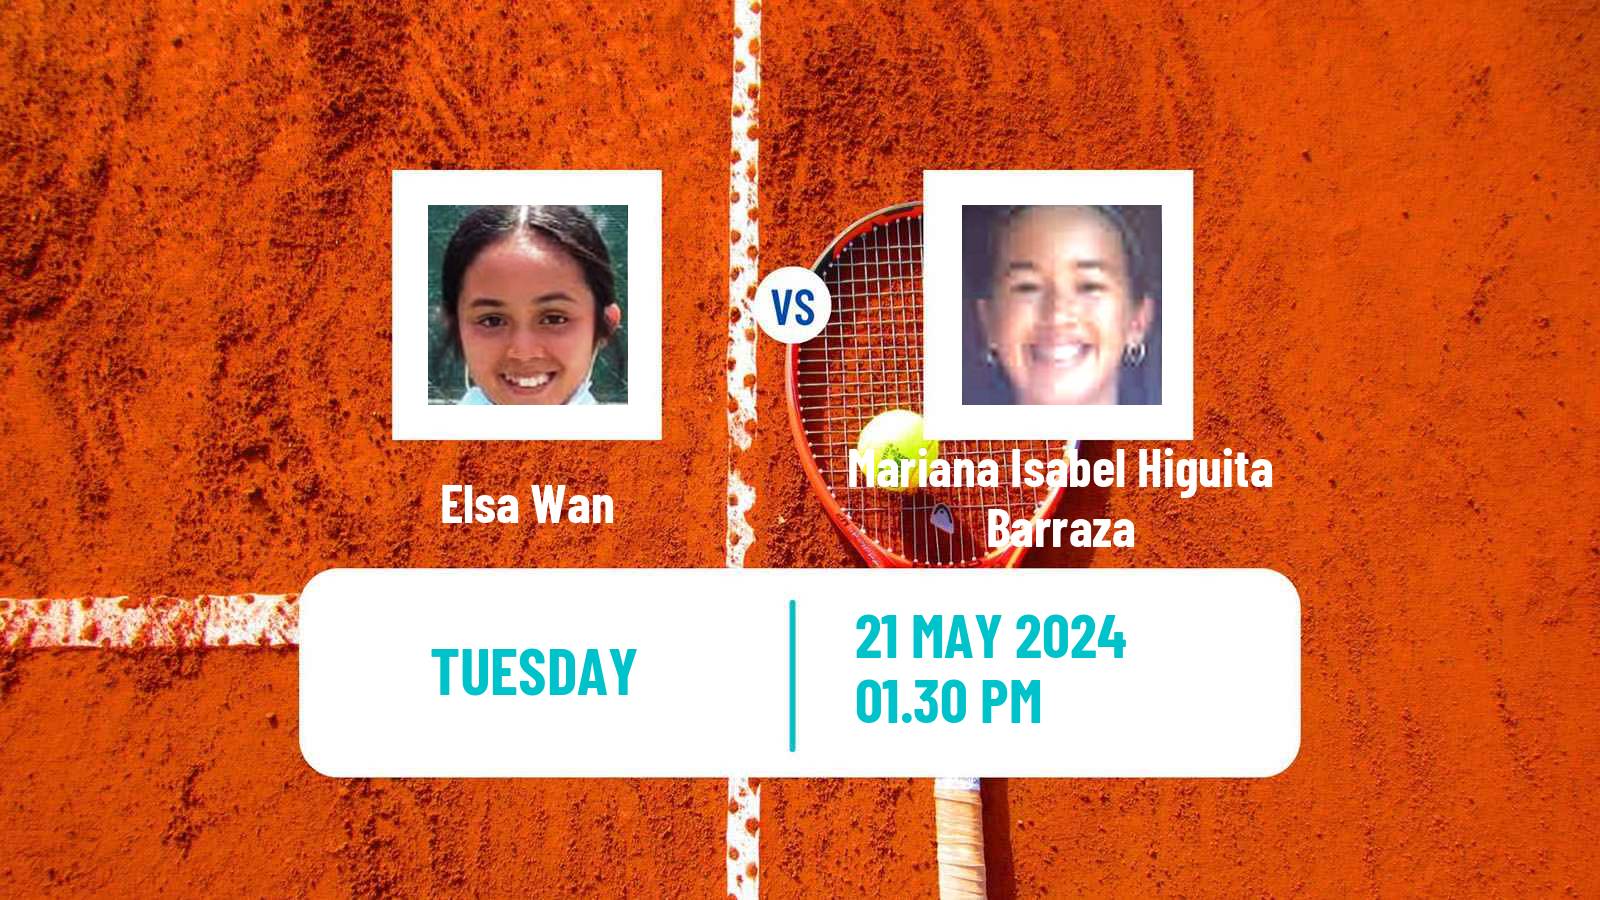 Tennis ITF W35 Santo Domingo 3 Women Elsa Wan - Mariana Isabel Higuita Barraza